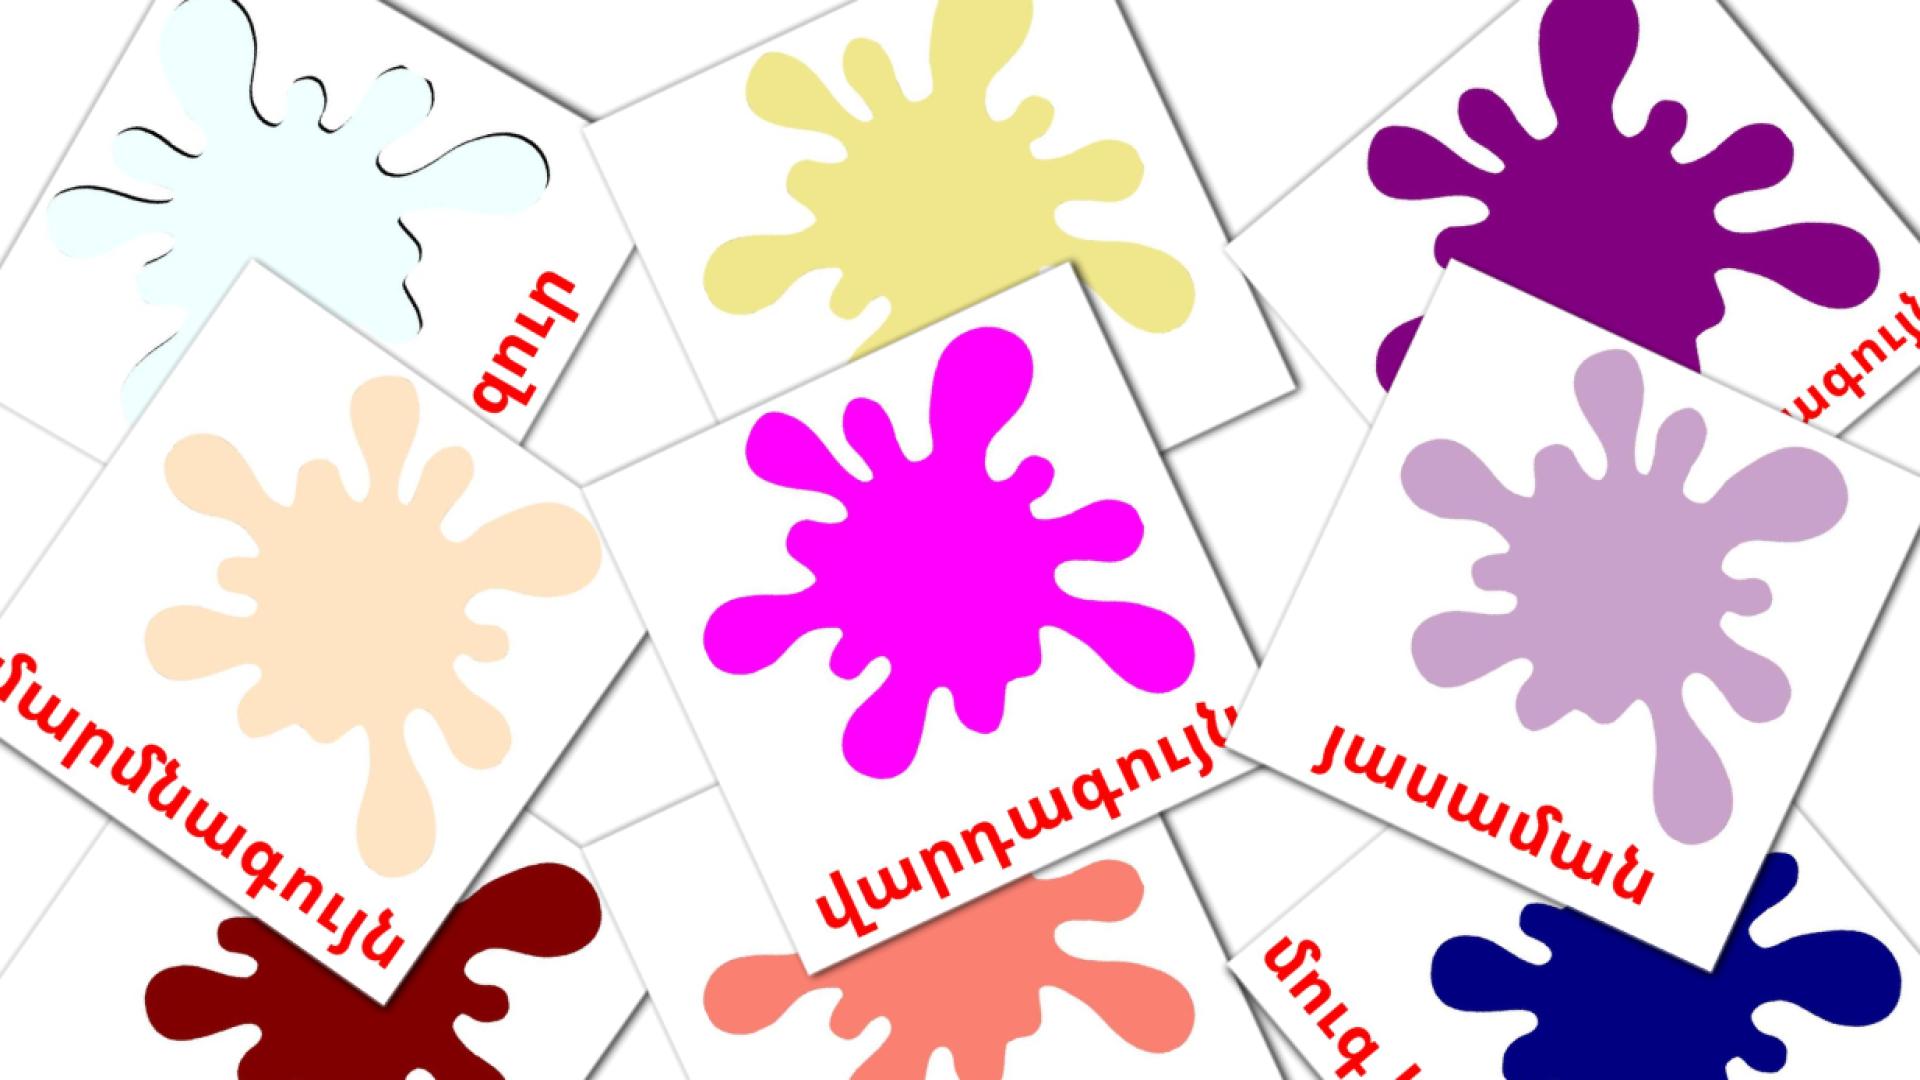 Secondary colors - armenian vocabulary cards